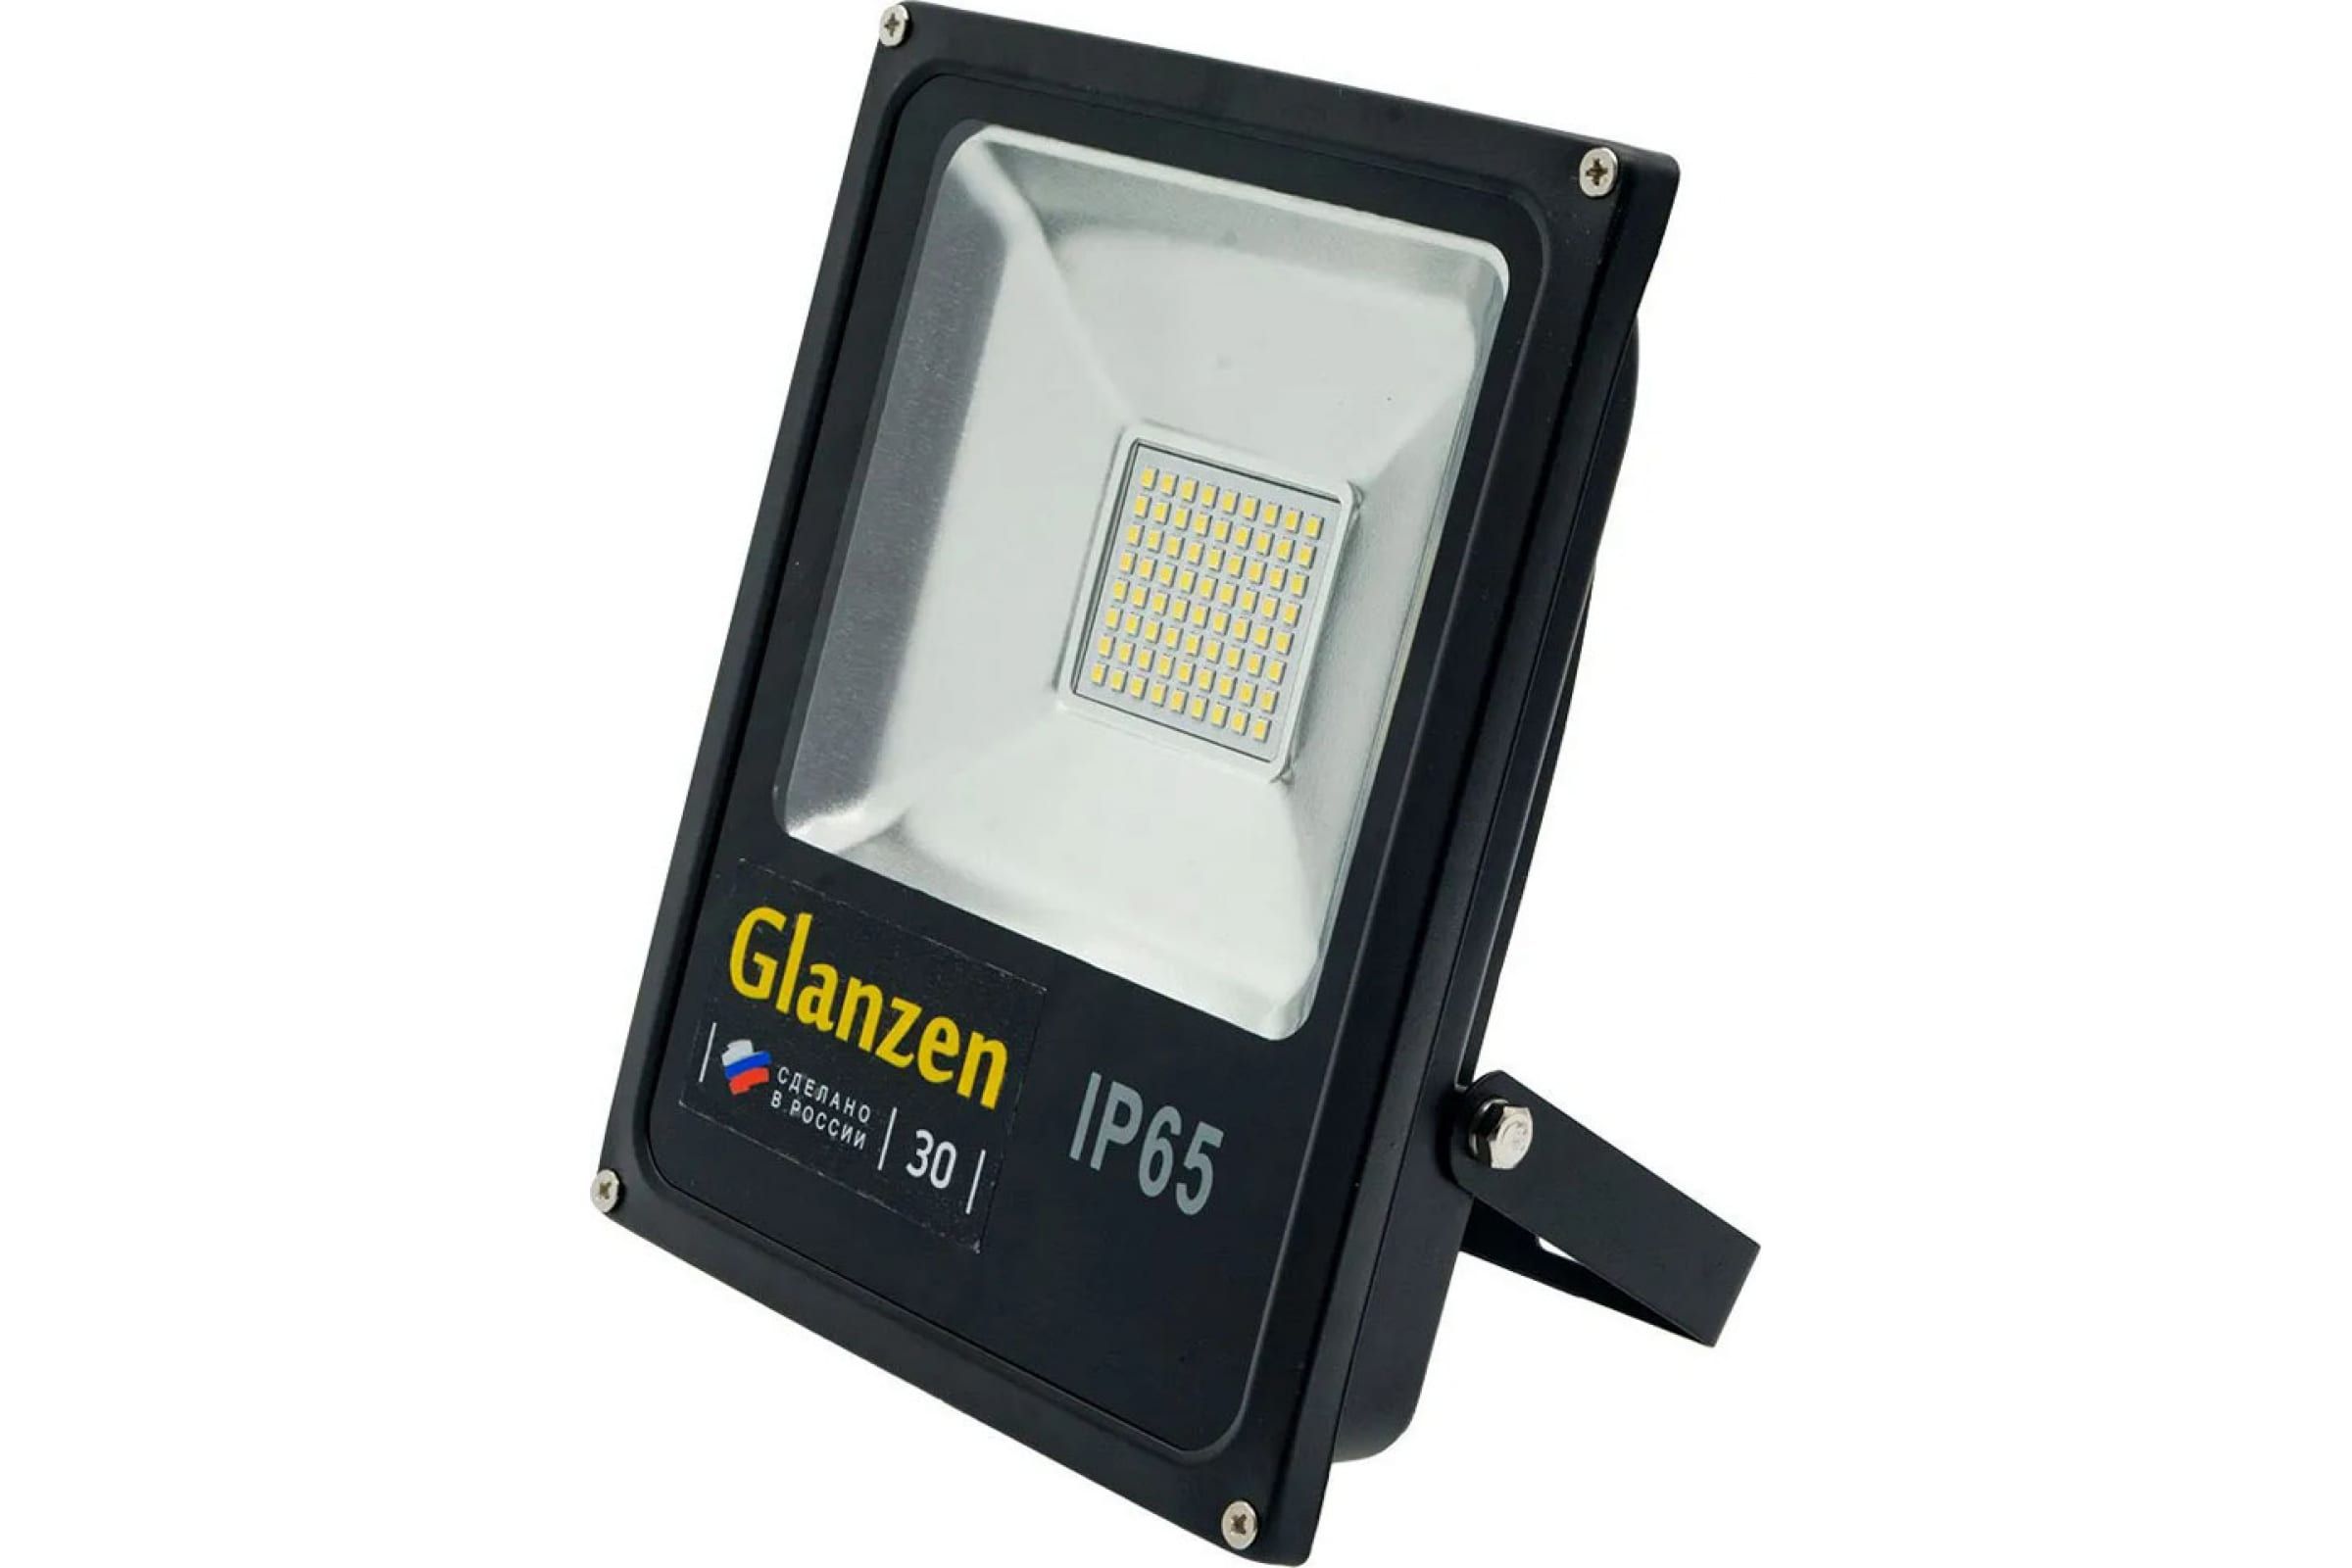 Прожектор glanzen fad. Прожектор светодиодный 50 Вт Glanzen fad-0005-50. Прожектор Glanzen fad-0003-30. Светодиодный низковольтный прожектор Glanzen fad-0003-30-12v. Прожектор Гланзен 50 Вт.